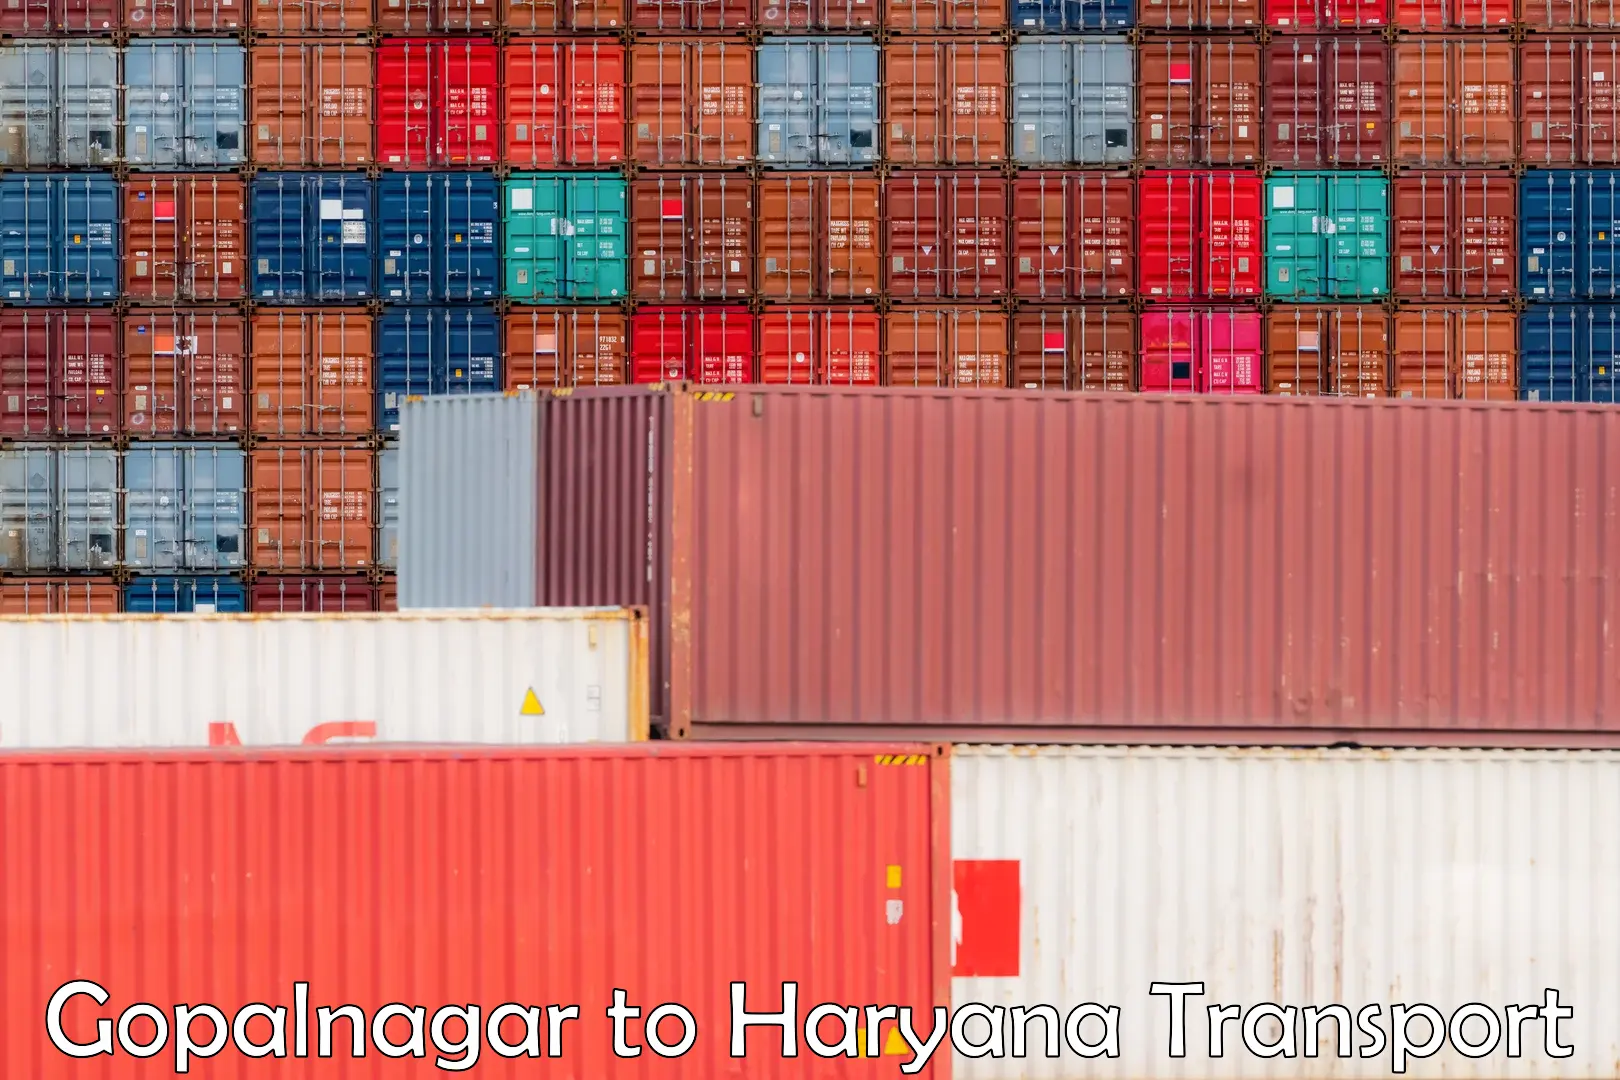 International cargo transportation services Gopalnagar to Ellenabad